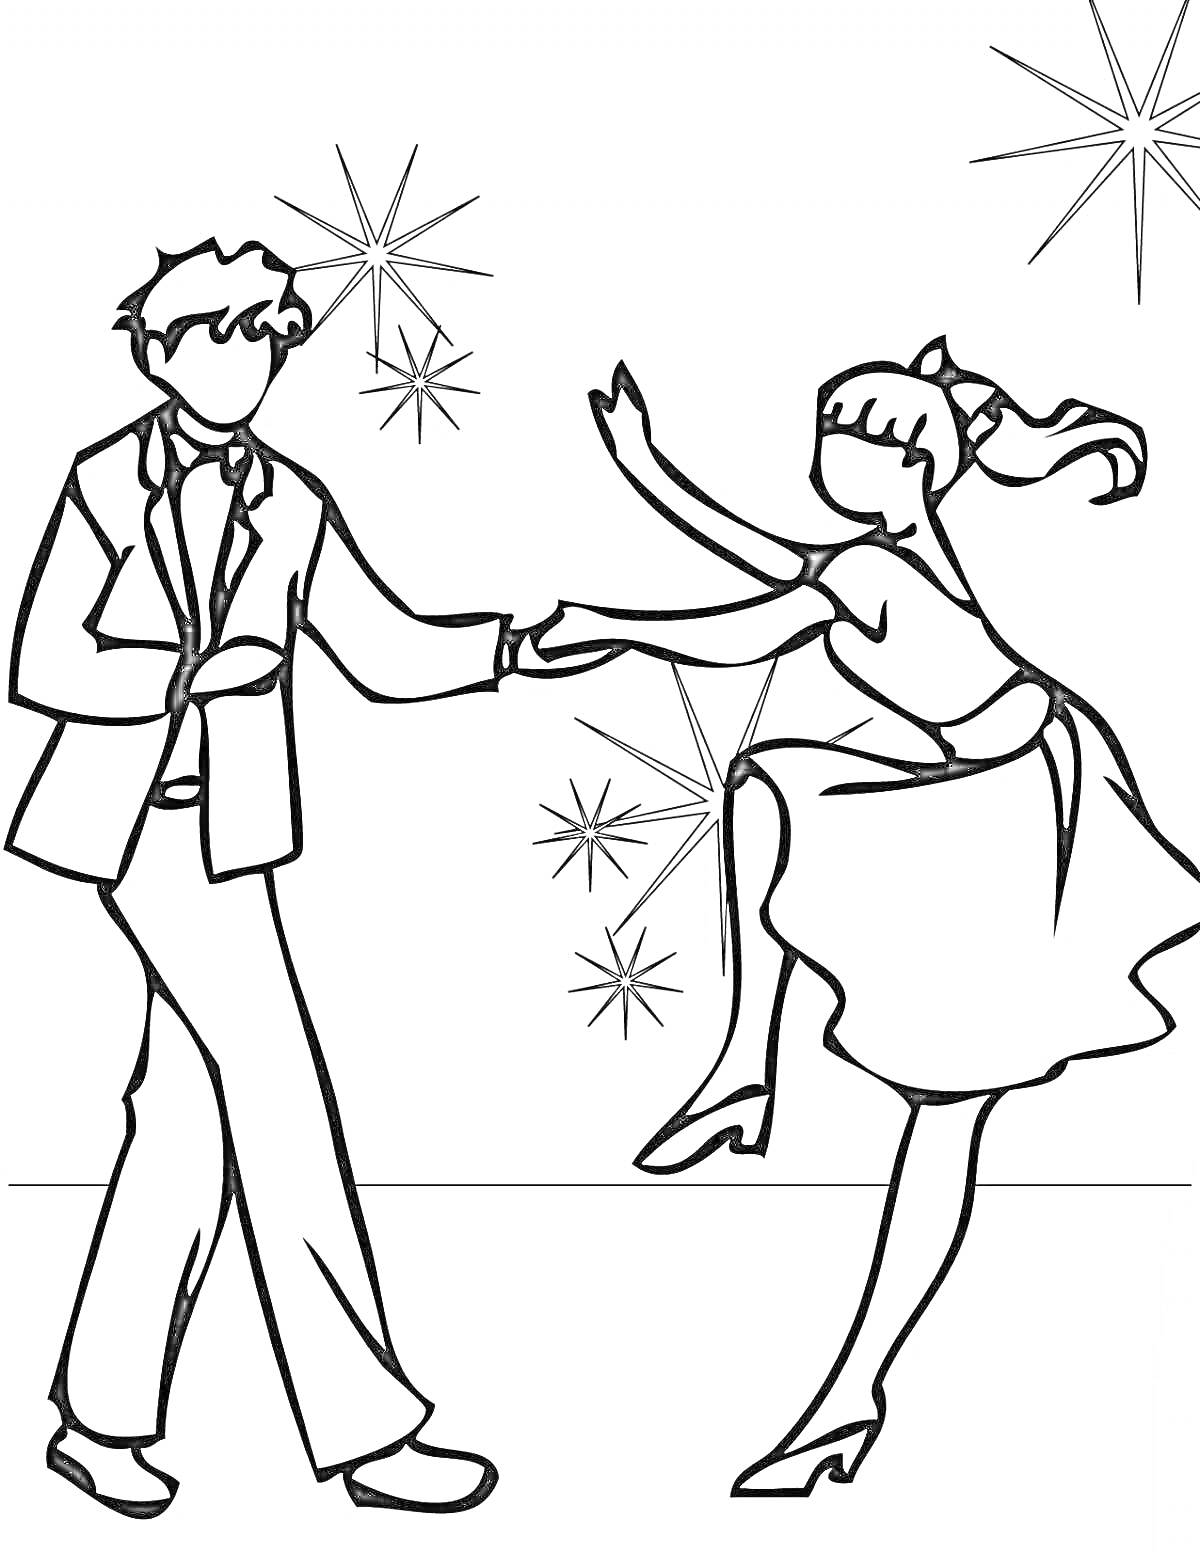 Раскраска Пара танцоров в сценическом костюме танцует на фоне звезд